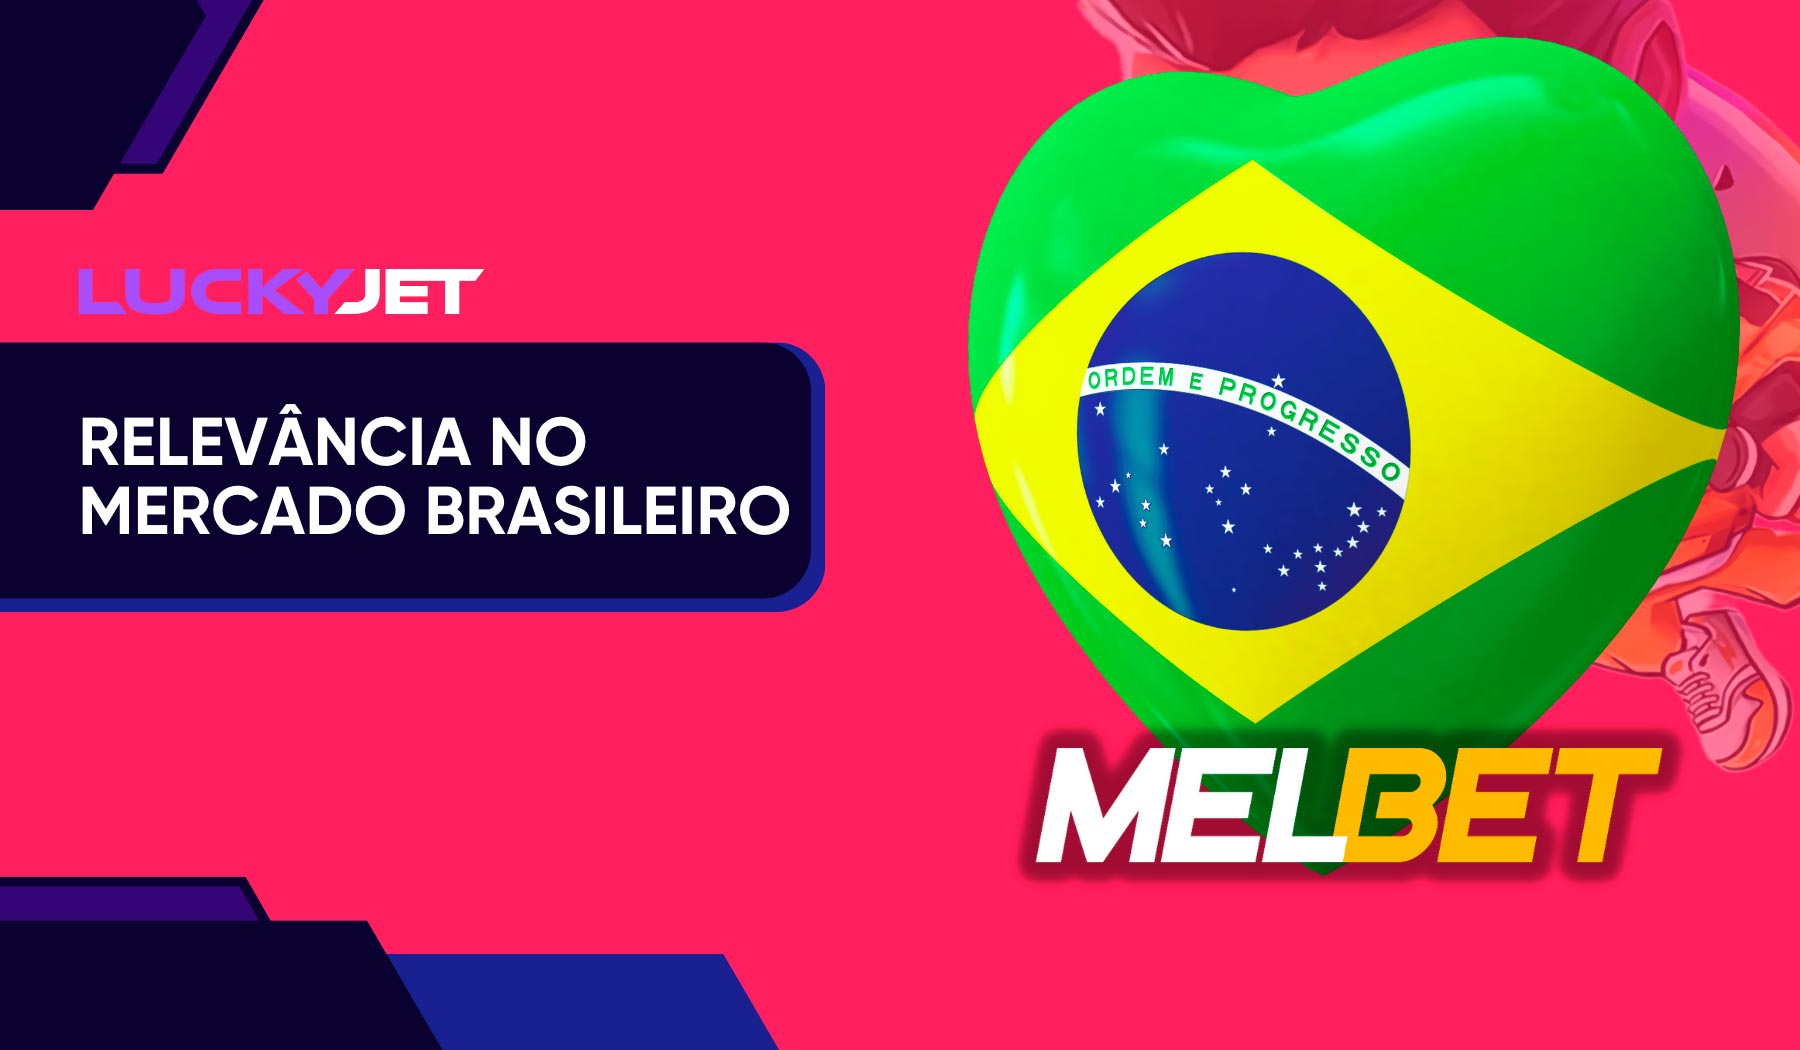 Lucky Jet Melbet no mercado brasileiro